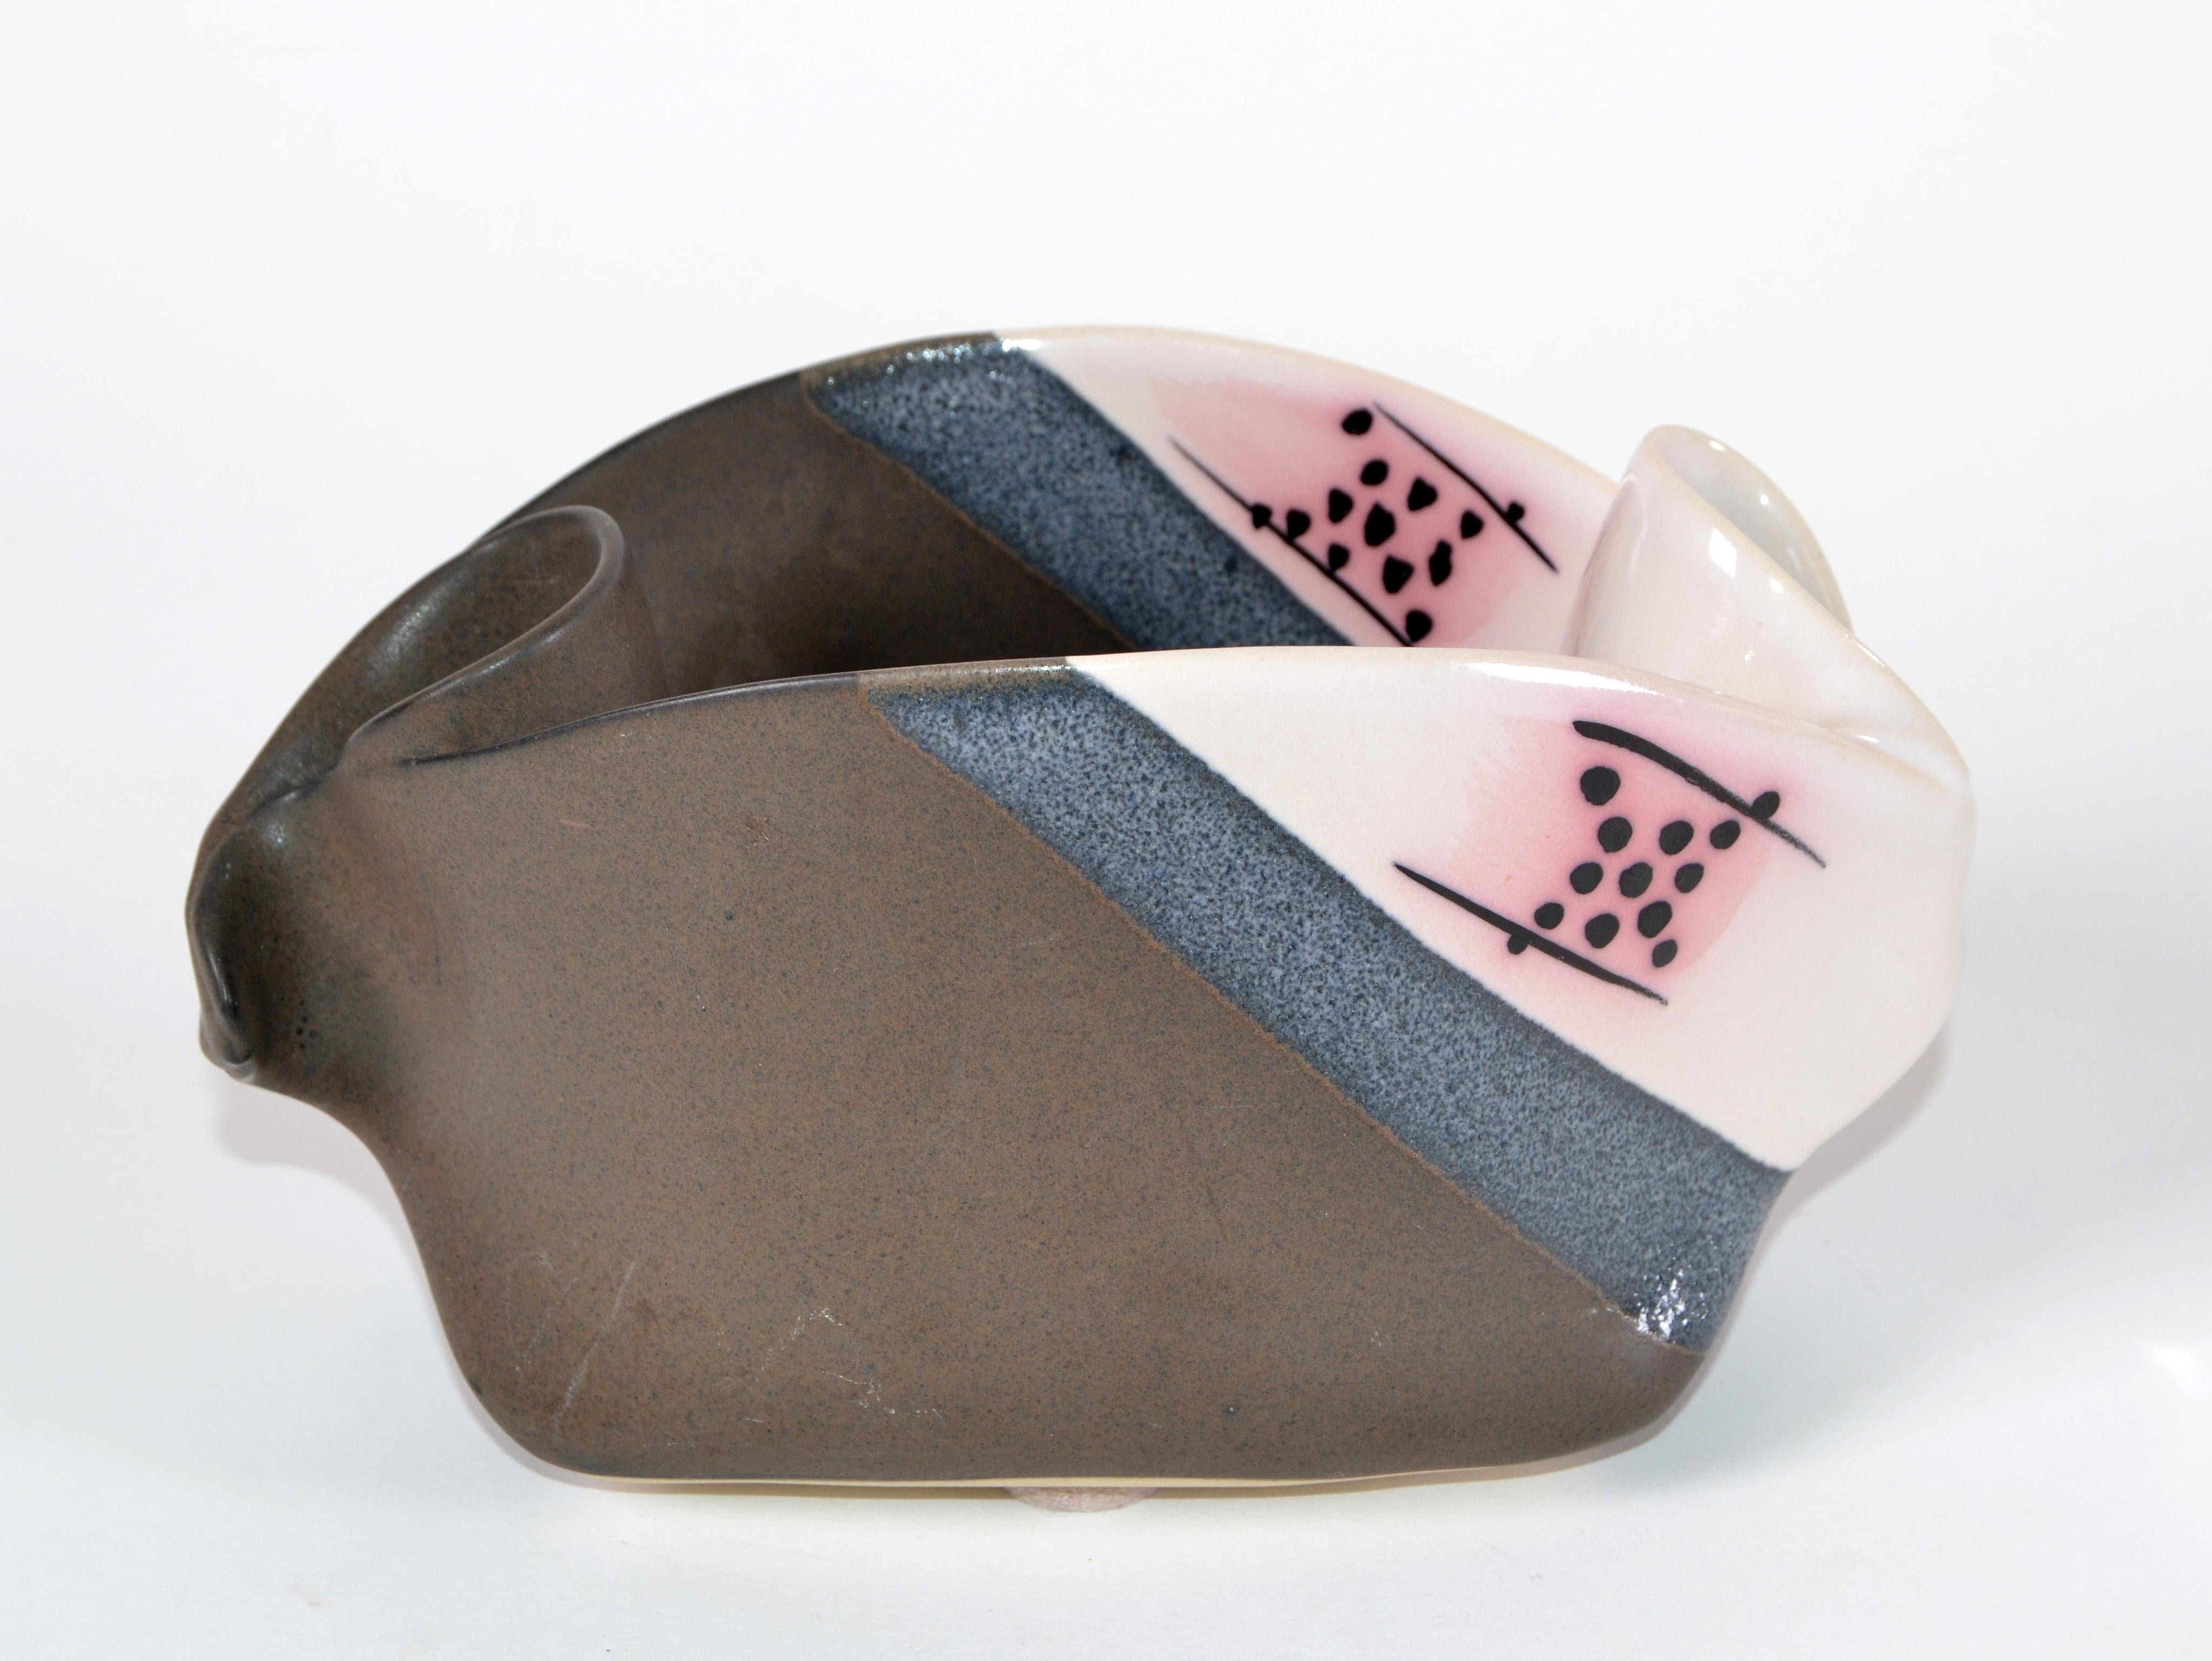 Ein von einer Art Mid-Century Modern Freiform glasierte Keramik Schüssel, Keramik in grau, blau rosa und schwarzer Farbe.
Hervorragend hergestellt in Kanada in den 1970er Jahren.
Originaletikett darunter.